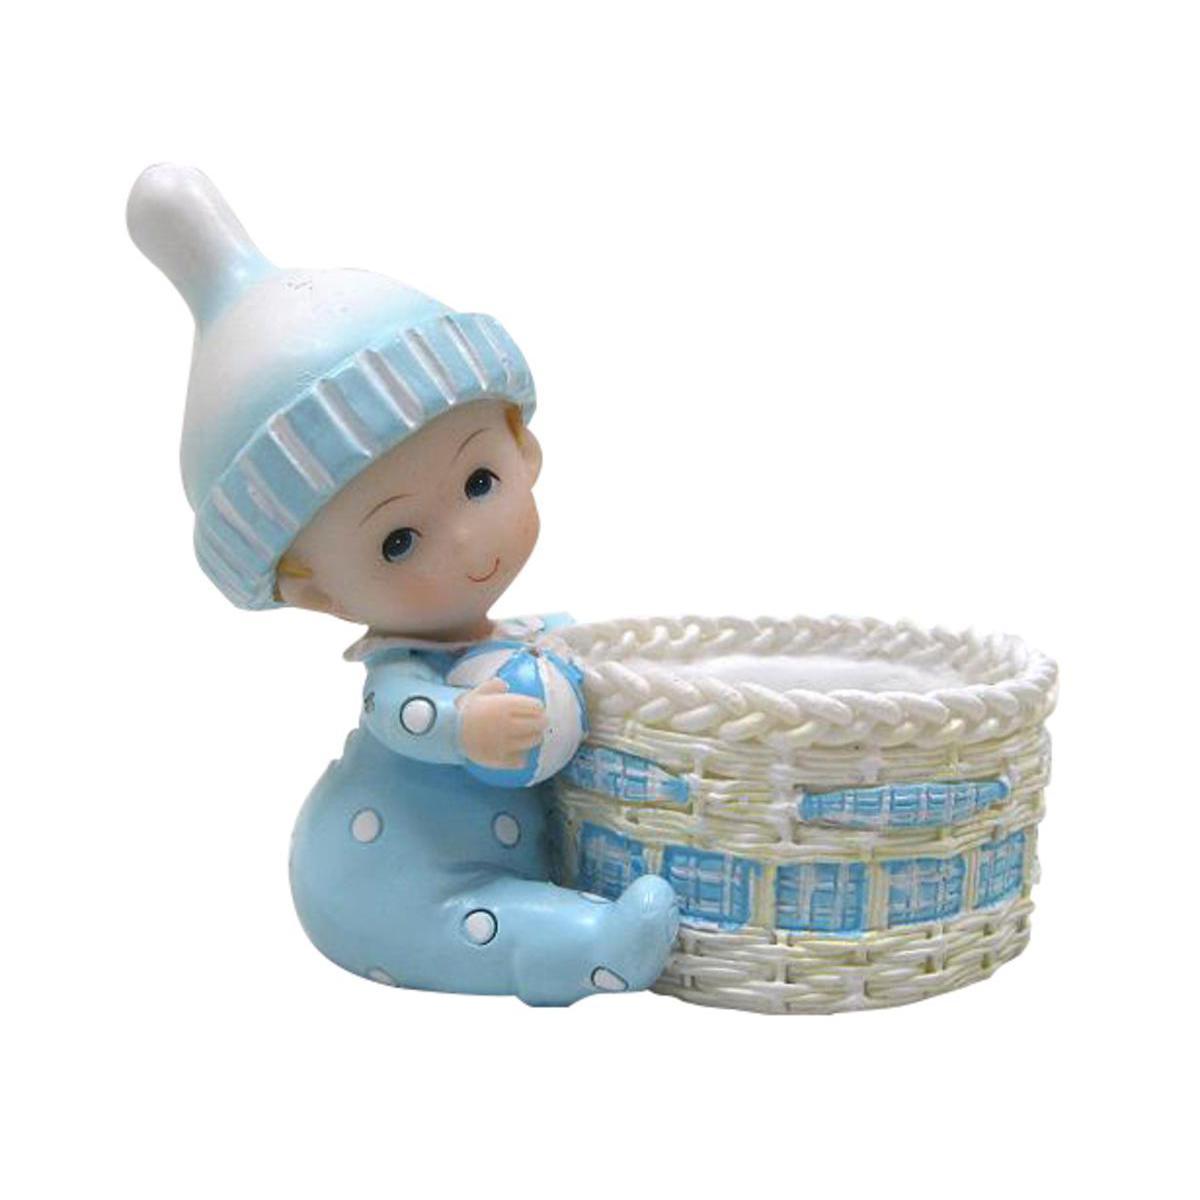 Bonbonnière panier rond bébé garçon - Résine - 9 x 5 x 7,5 cm - Bleu ciel